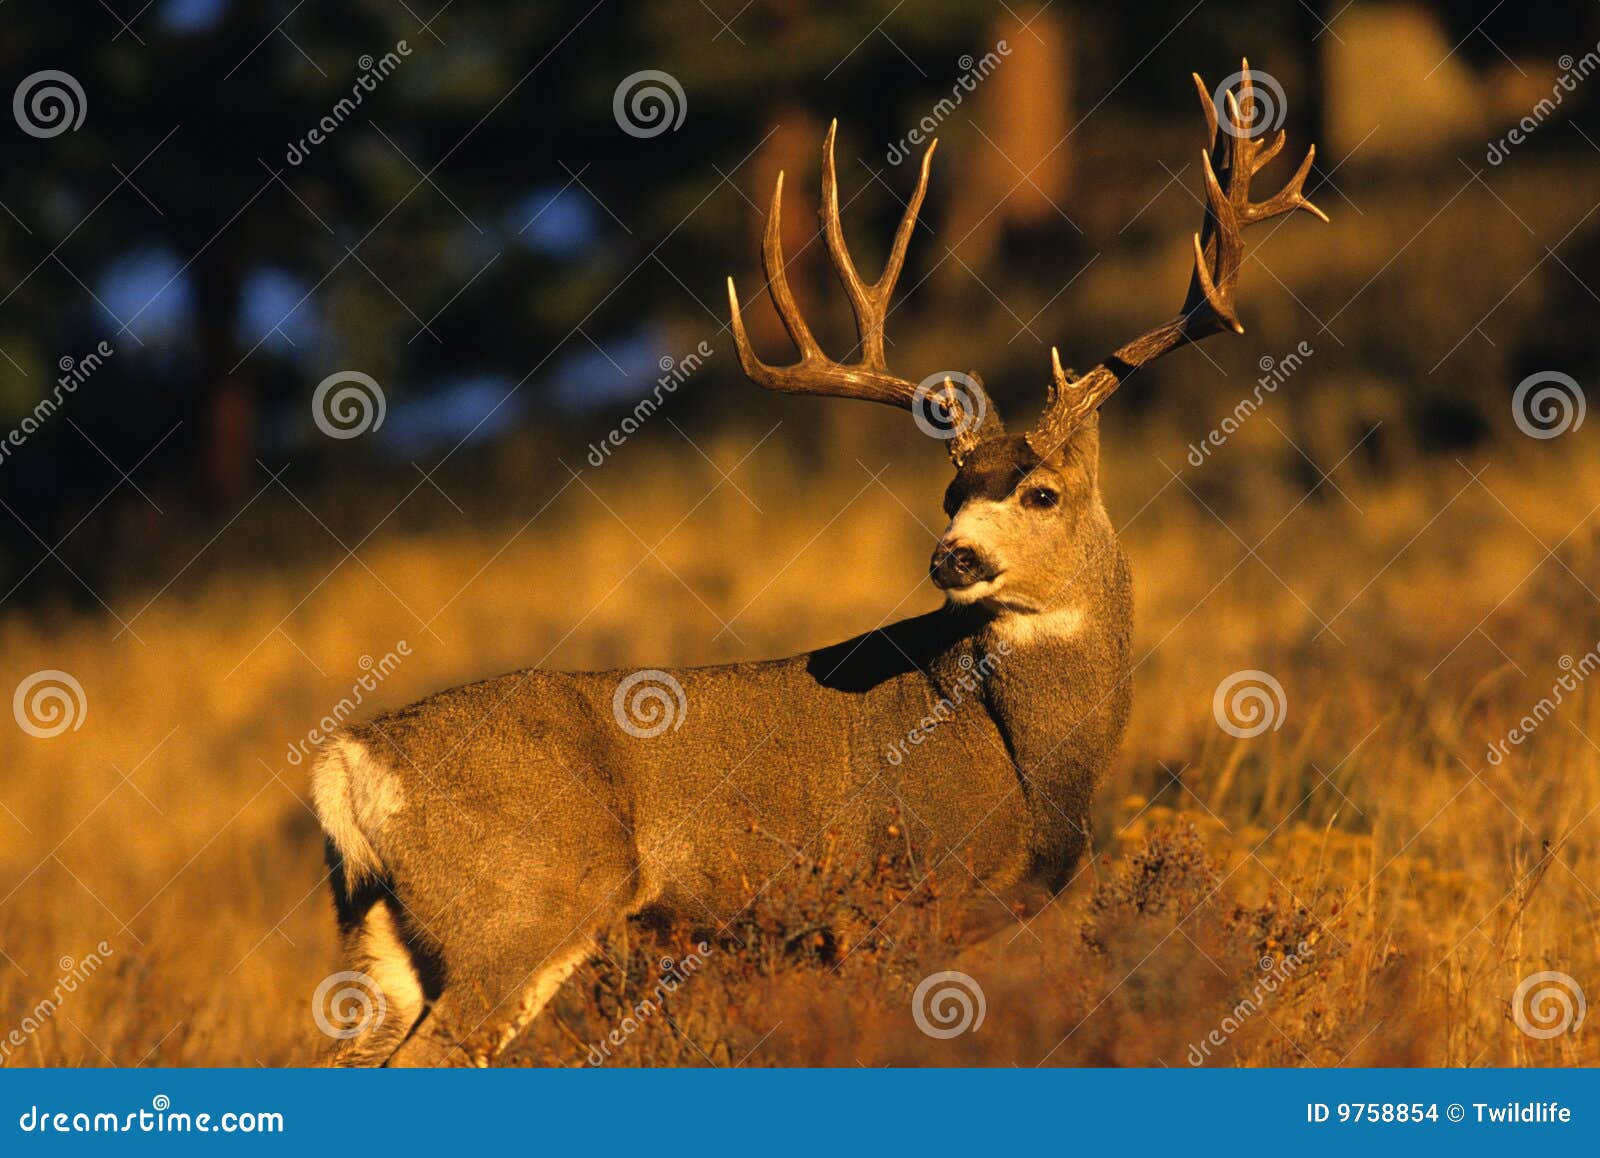 mule deer buck in rut